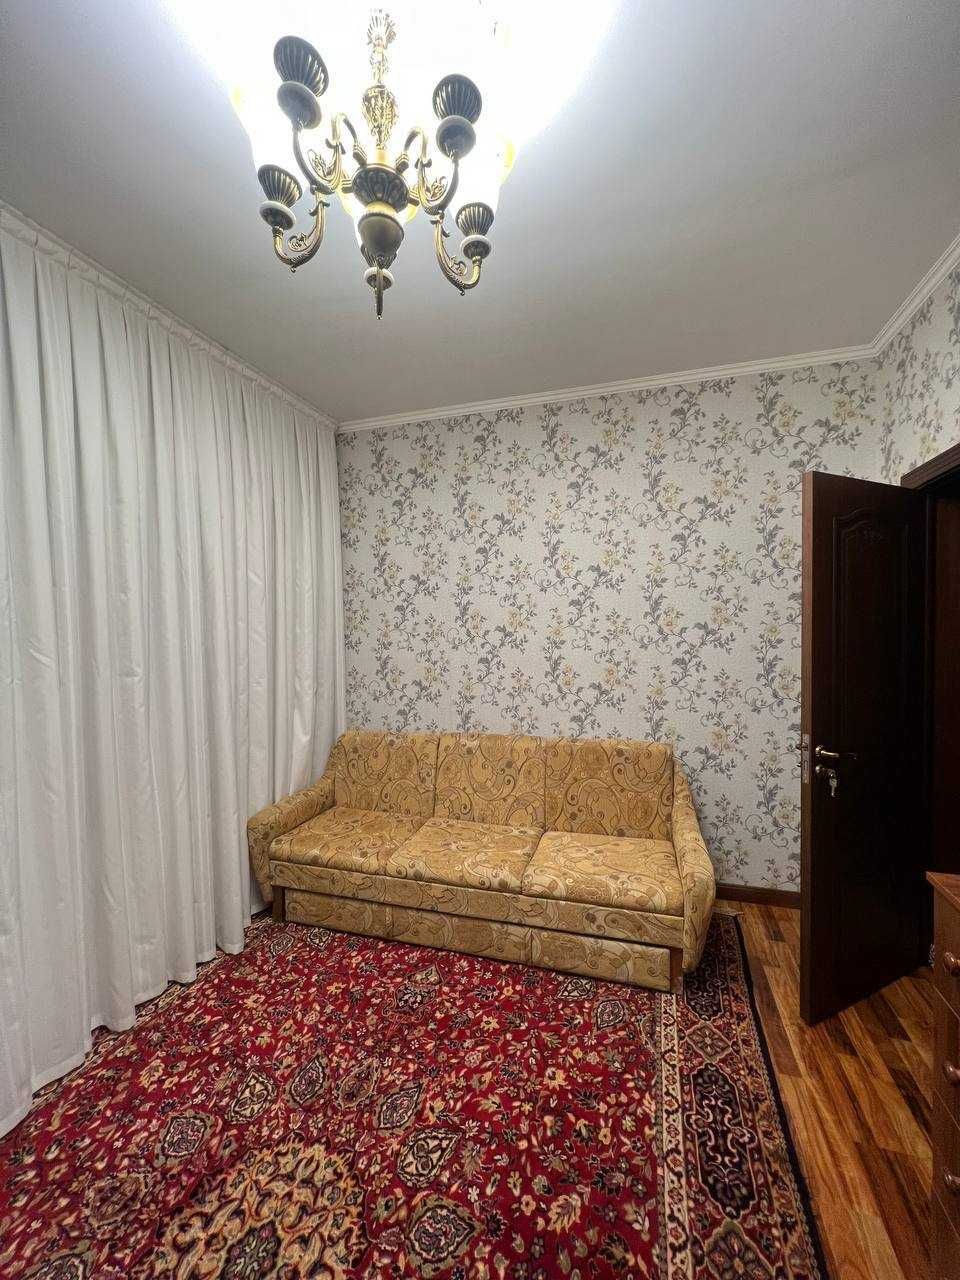 Срочно сдается в аренду 5 комнатная квартира в центре Ташкента